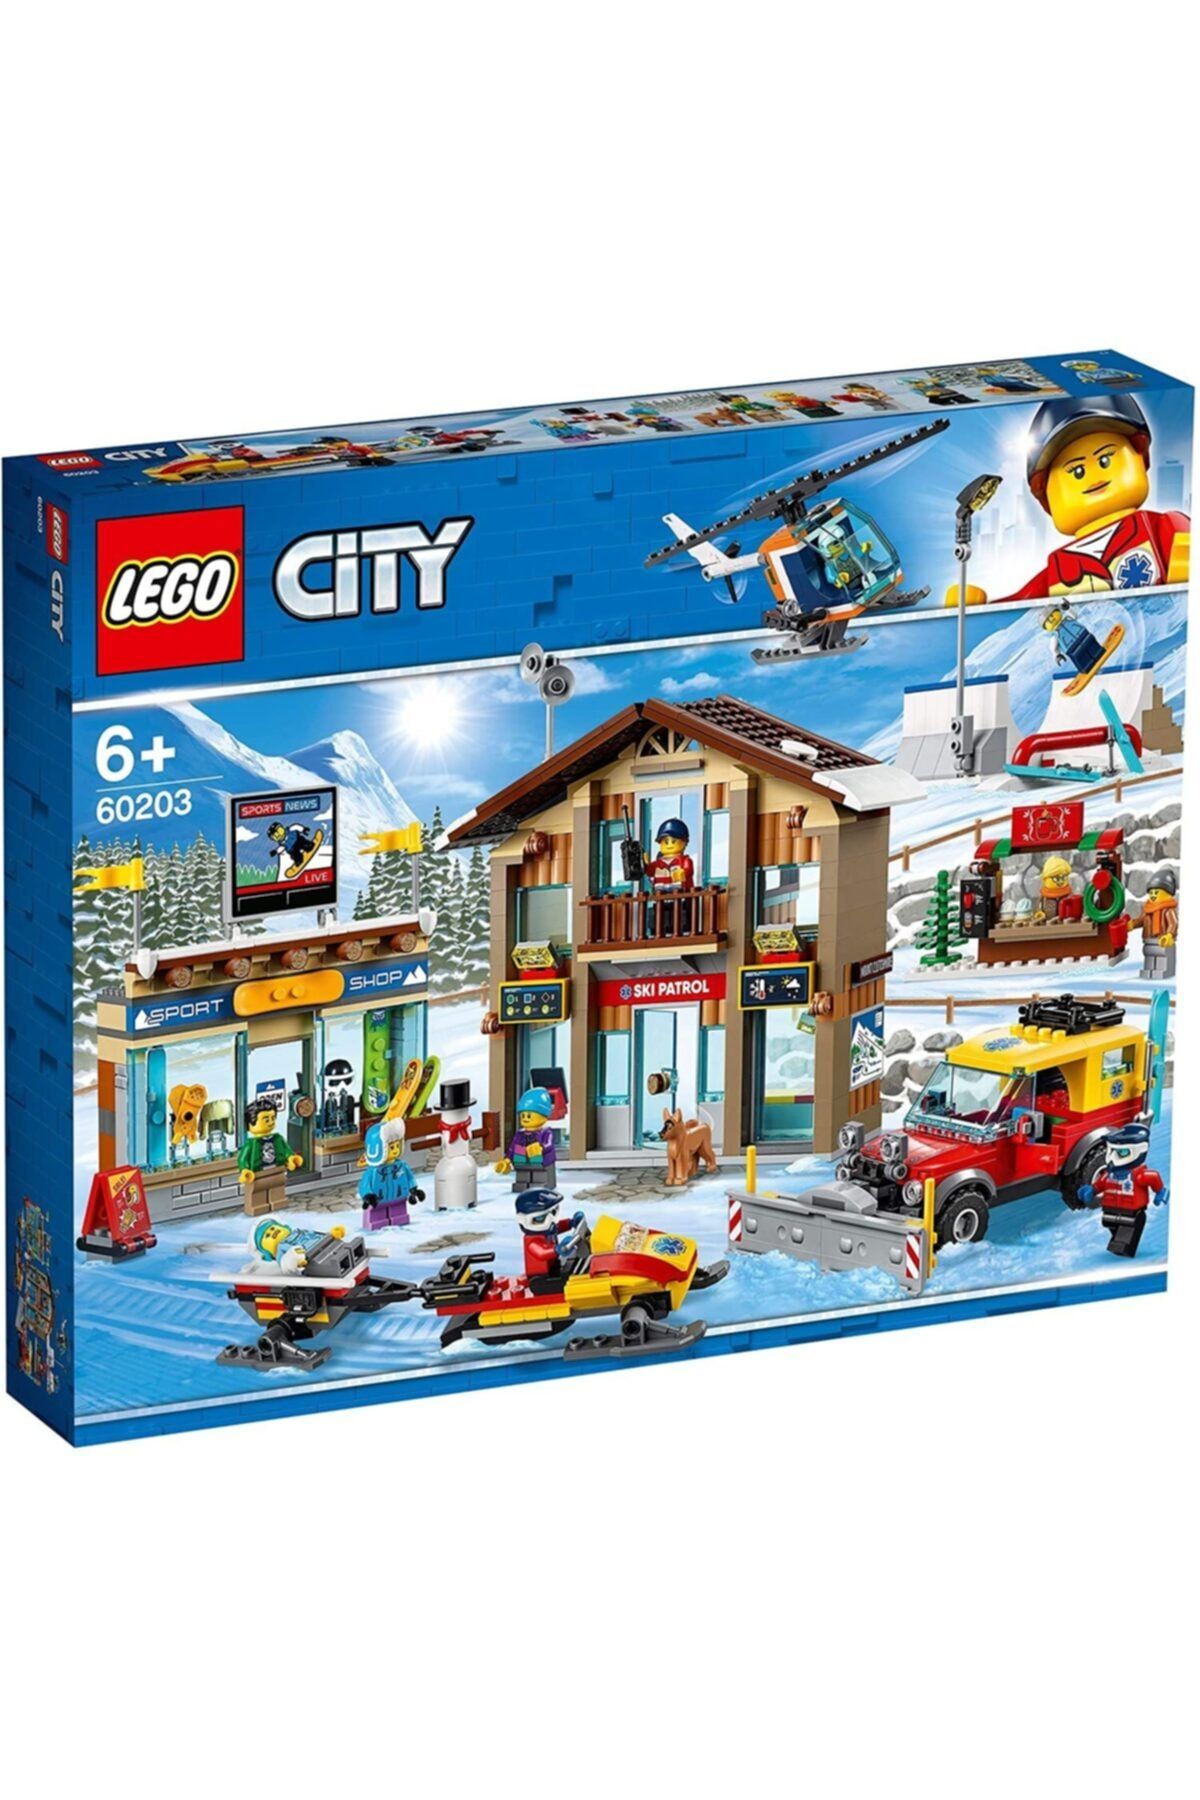 LEGO Lsc60203 Cıty-city Kayak Merkezi /city /806 Pcs /+6 Yaş